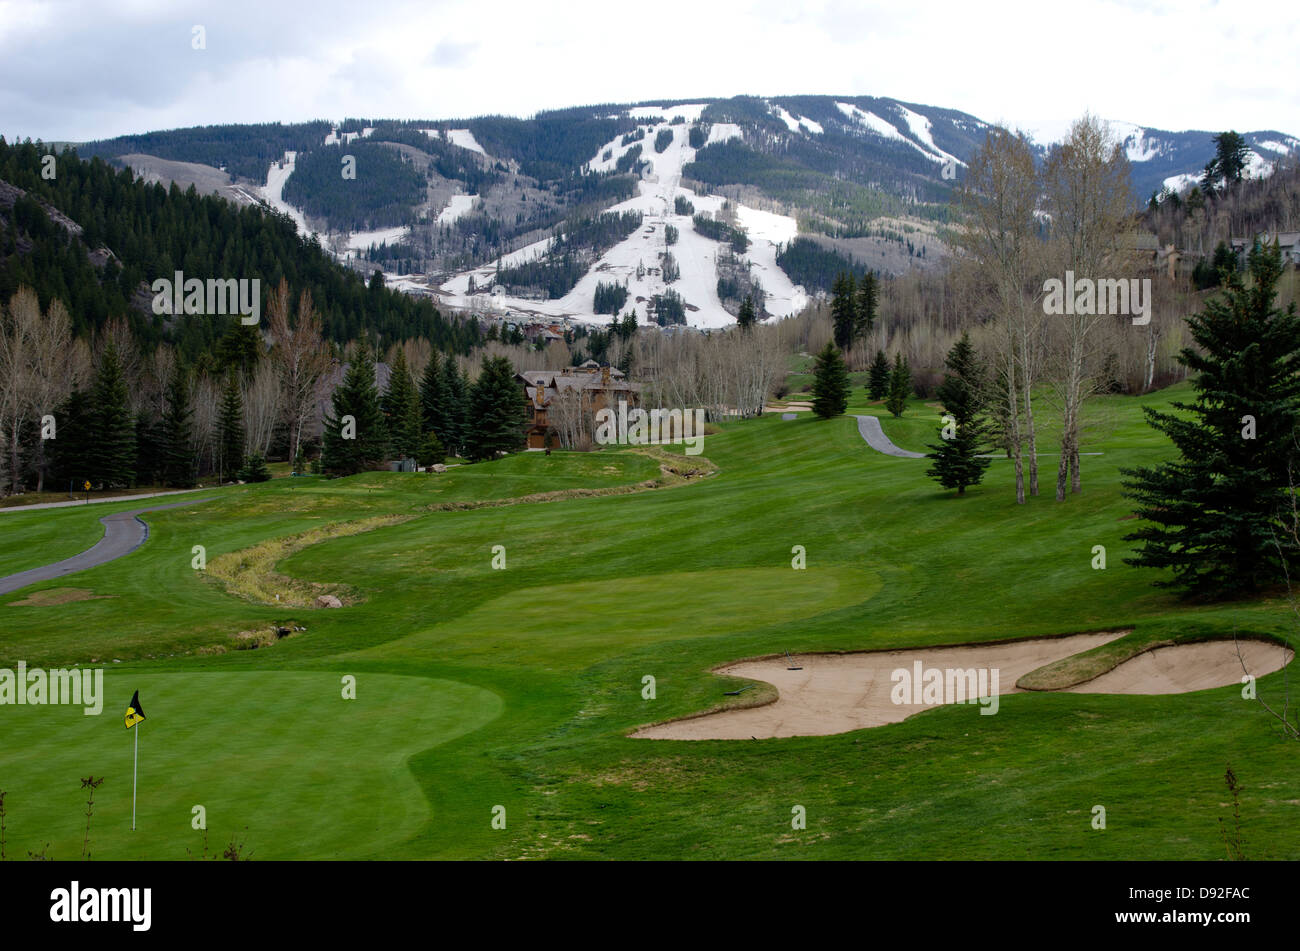 La combinaison de deux saisons distinctes de sports, un touriste peut jouer au golf sur le Beaver Creek Golf Course le même jour ils ski. Banque D'Images